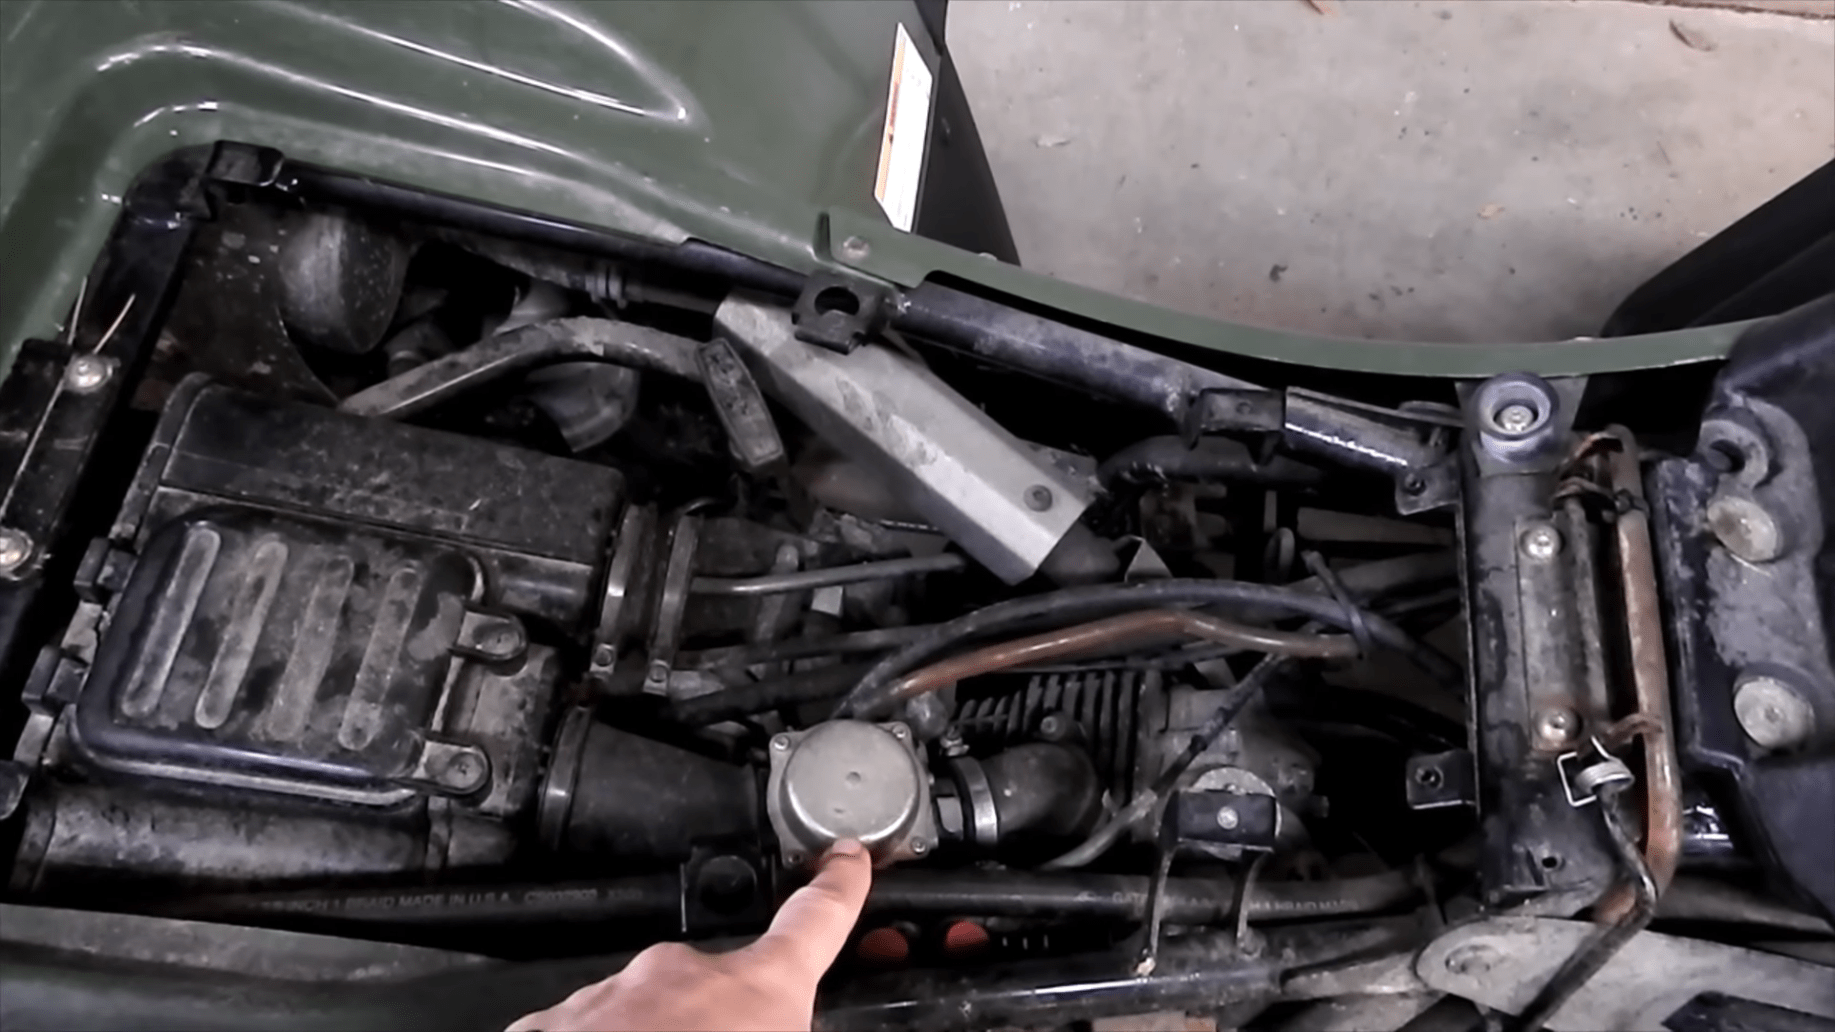 How To Clean The Arctic Cat Atv Carburetor?